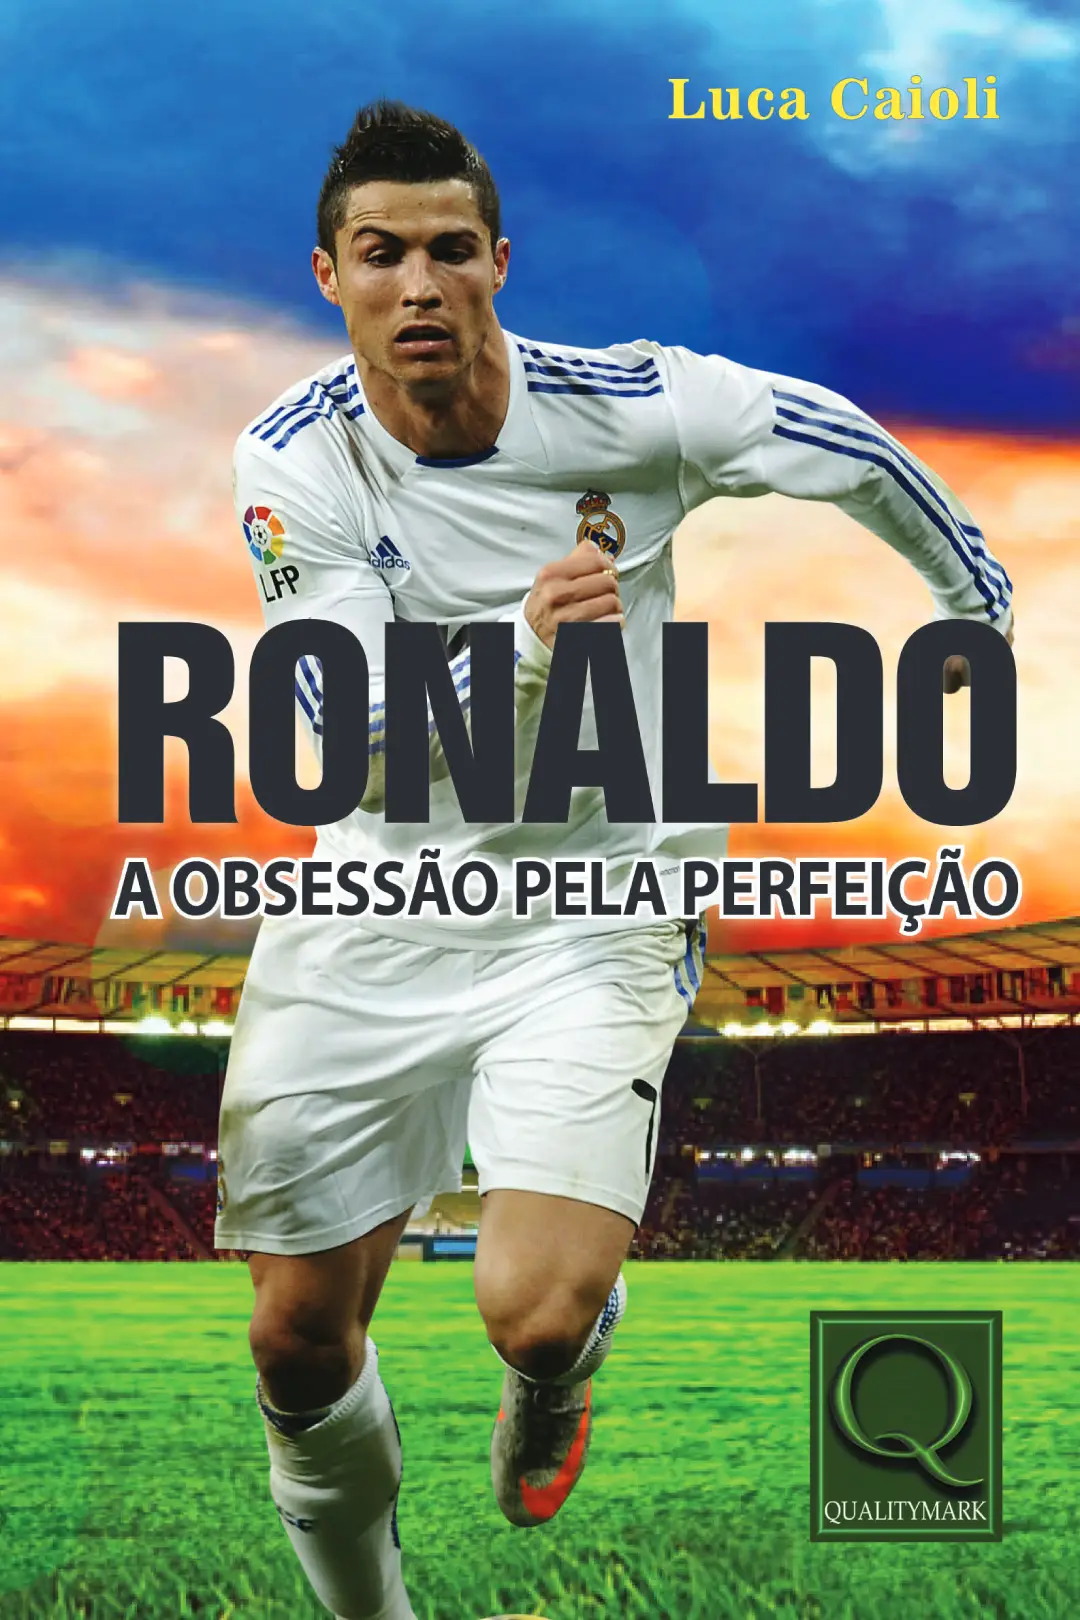 Ronaldo a obsessão pela perfeição